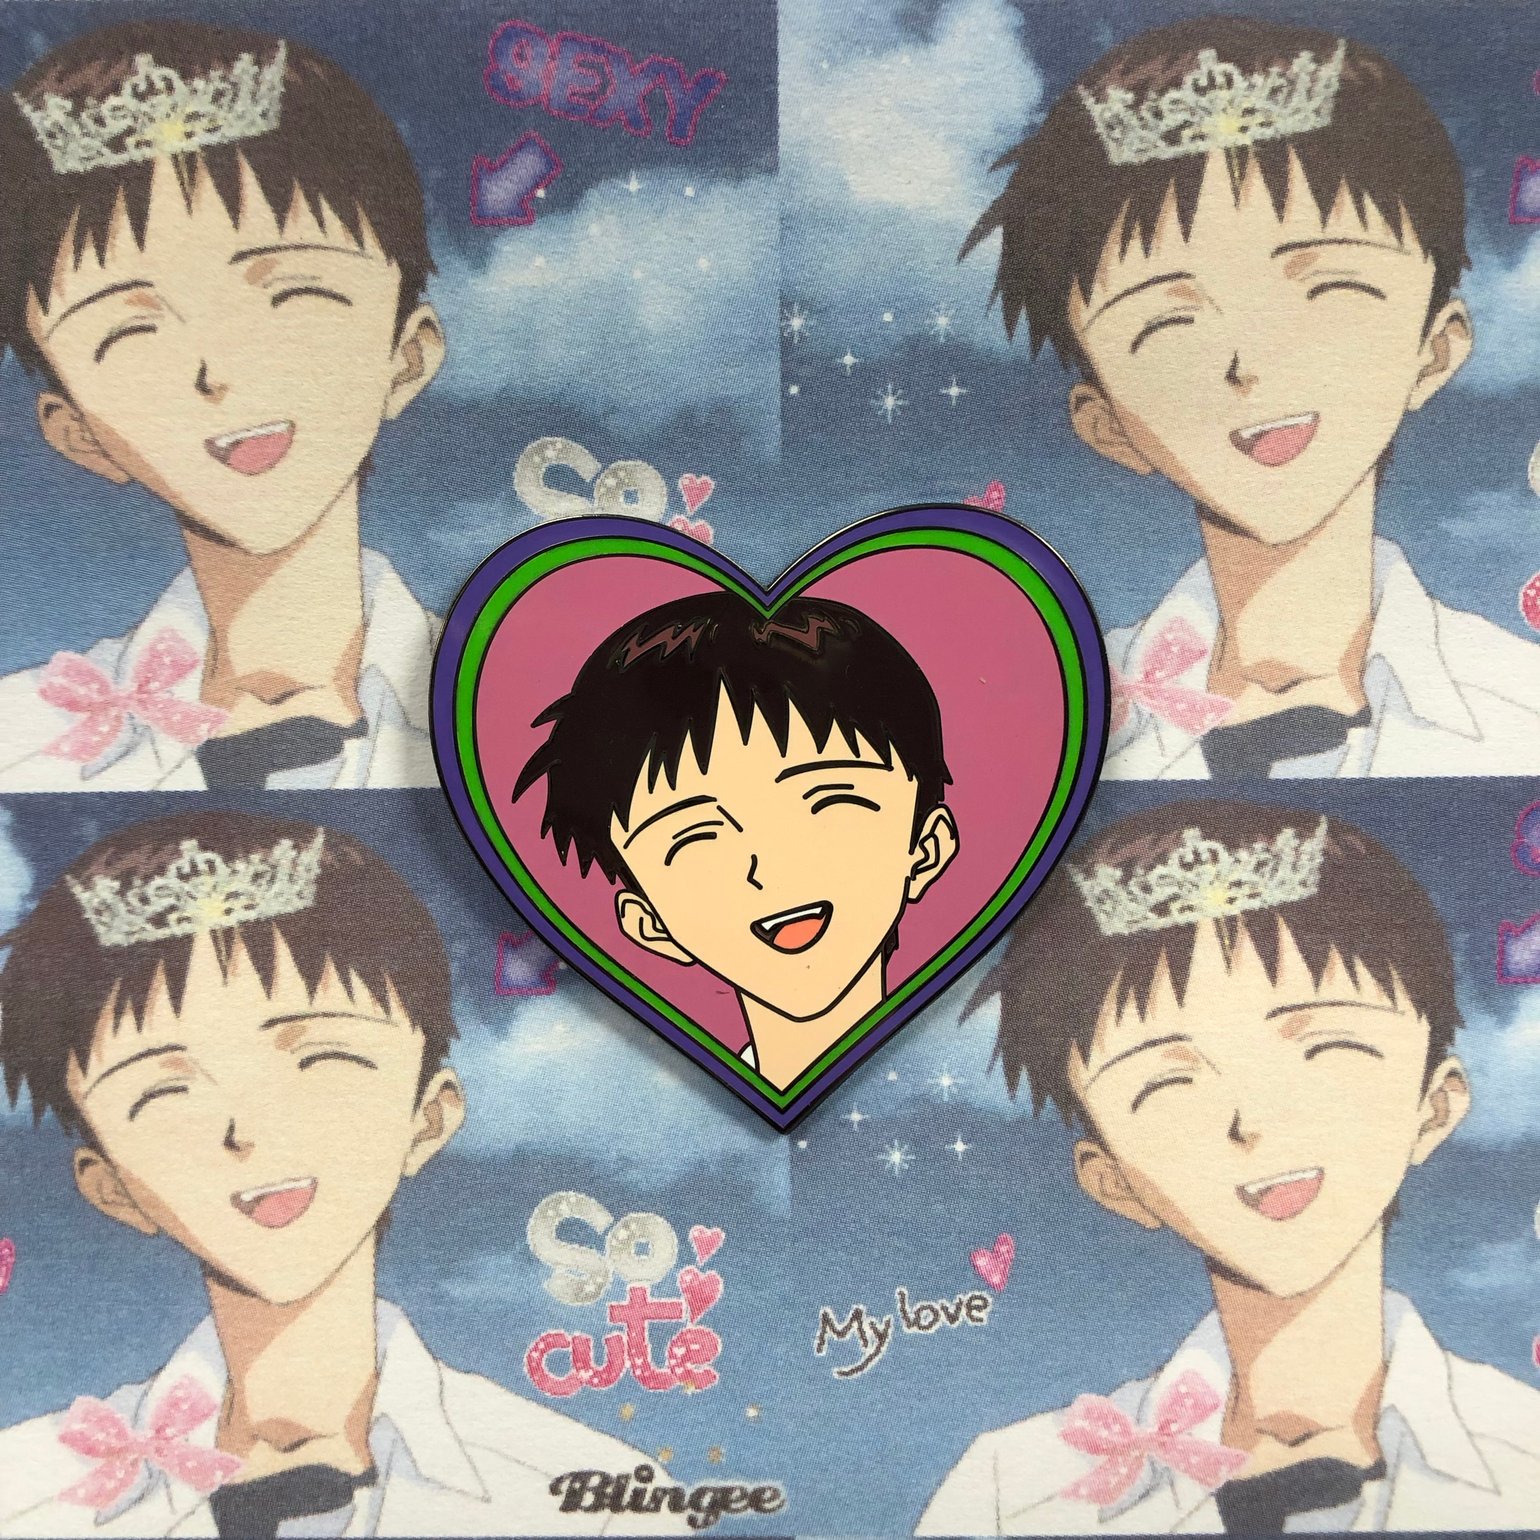 Image of Smiling Shinji